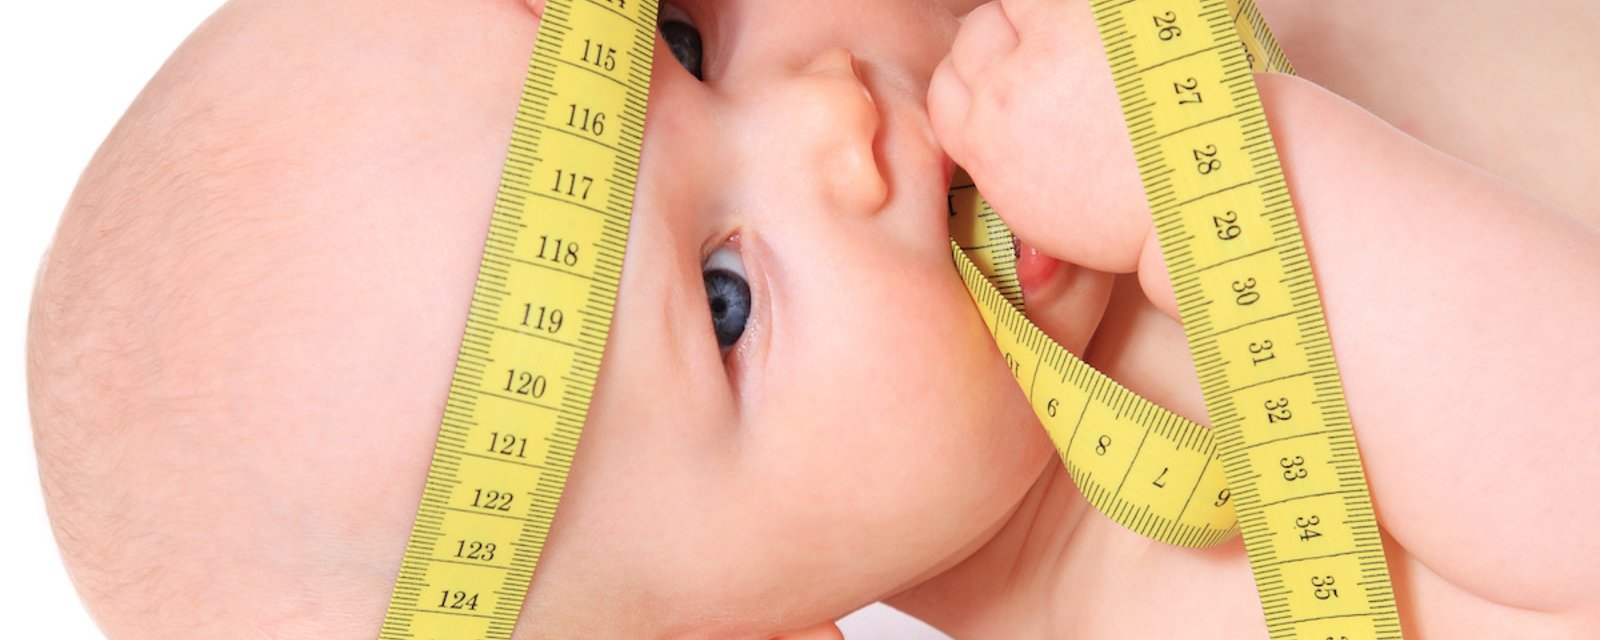 Les bébés à grosse tête ont plus de chances d'être intelligents